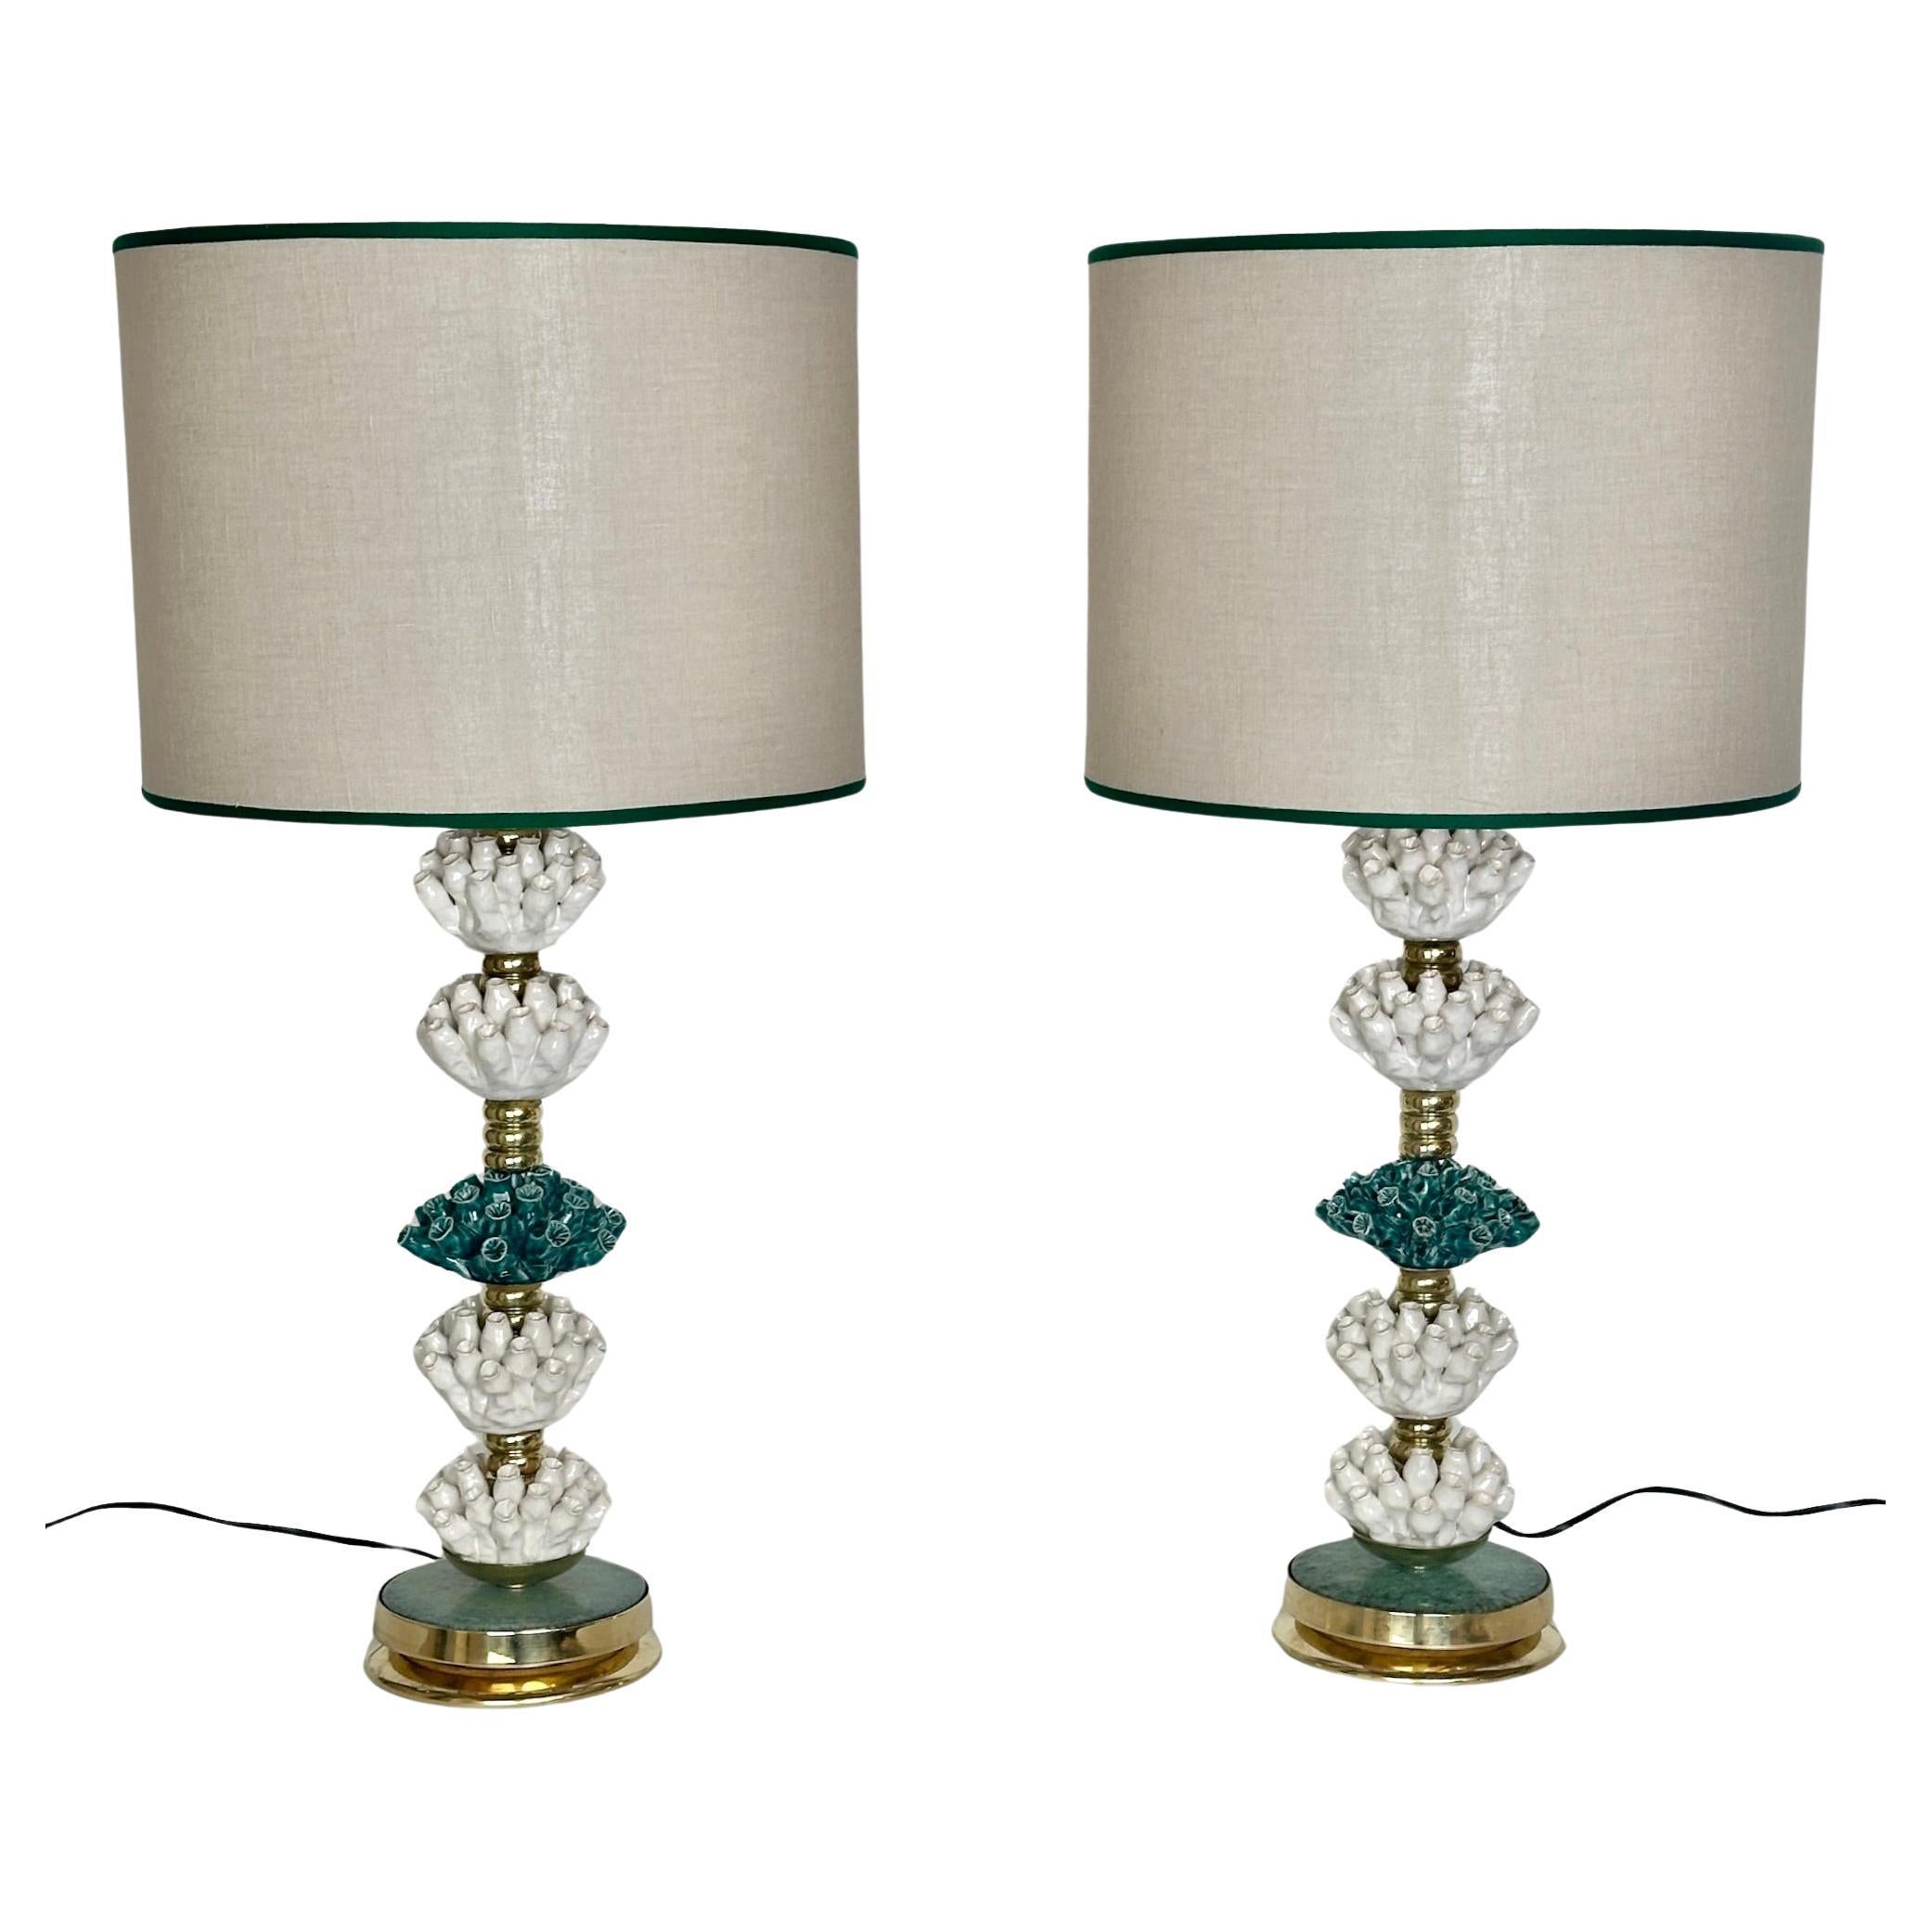 Fin du 20e siècle Paire de lampes de table italiennes en laiton et céramique verte et blanche